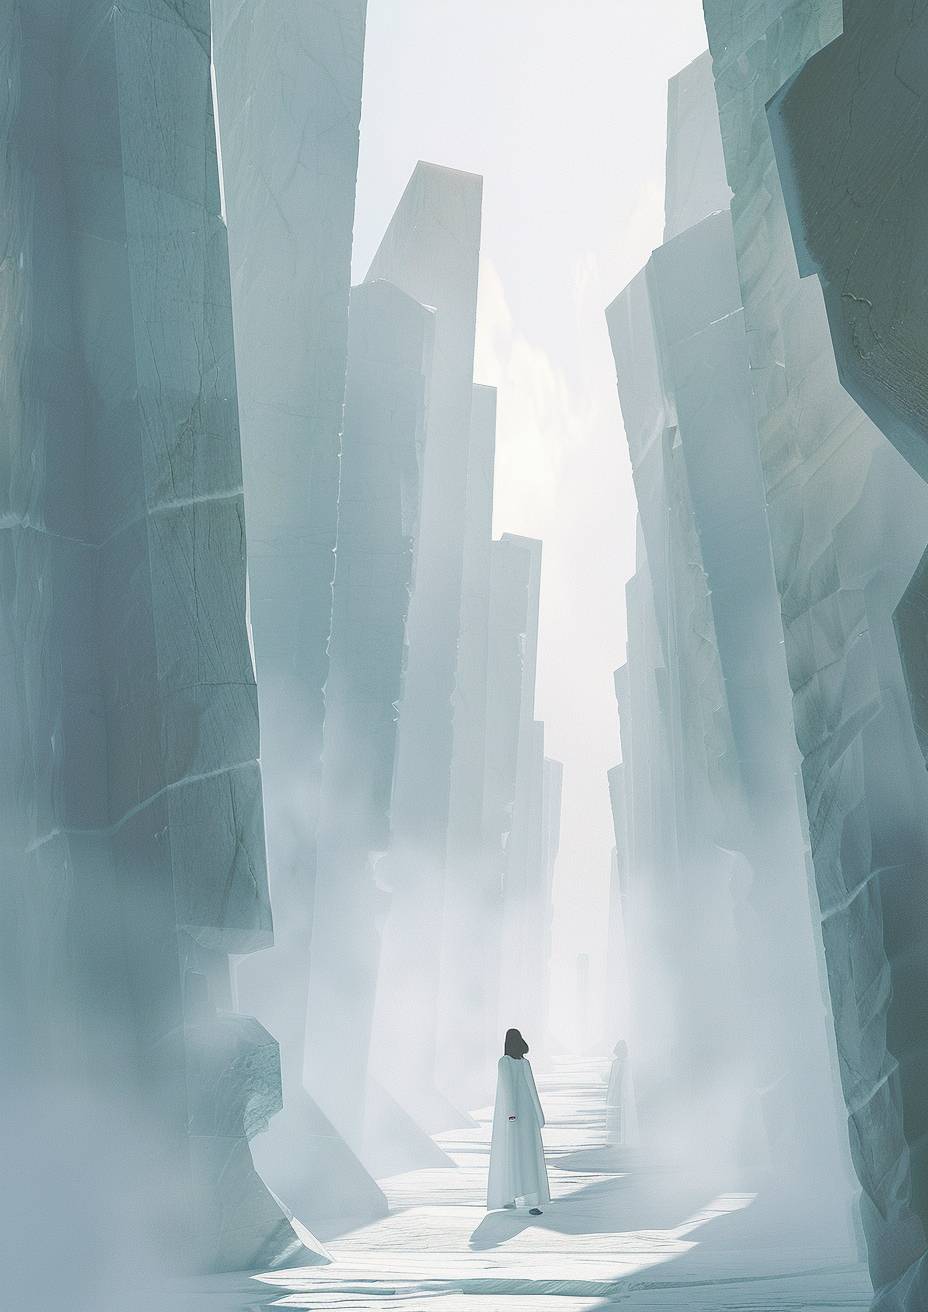 霧に満ちた境界の曖昧な空間の中で、白い幾何学的な彫刻、規則的な石の柱、遠くに美しい女性、モノクローム、超現実的で夢のような雰囲気、拡散した光、ミニマリストの強烈なビジュアルフロー